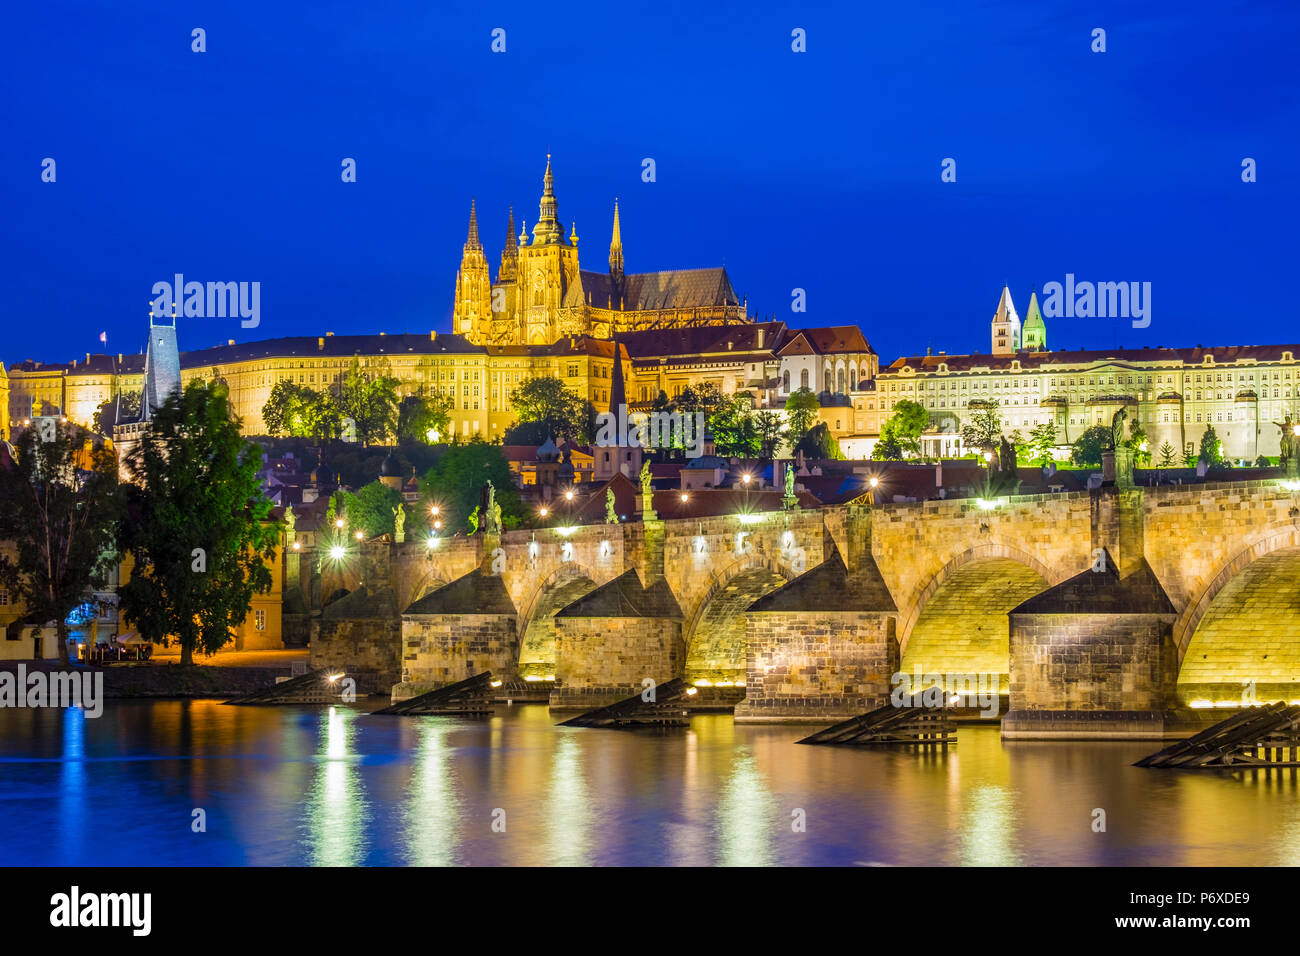 Repubblica Ceca, Praga Staré Mesto (Città Vecchia). Il Ponte Carlo e il Castello di Praga, Prazsky Hrad, sul fiume Moldava al crepuscolo. Foto Stock